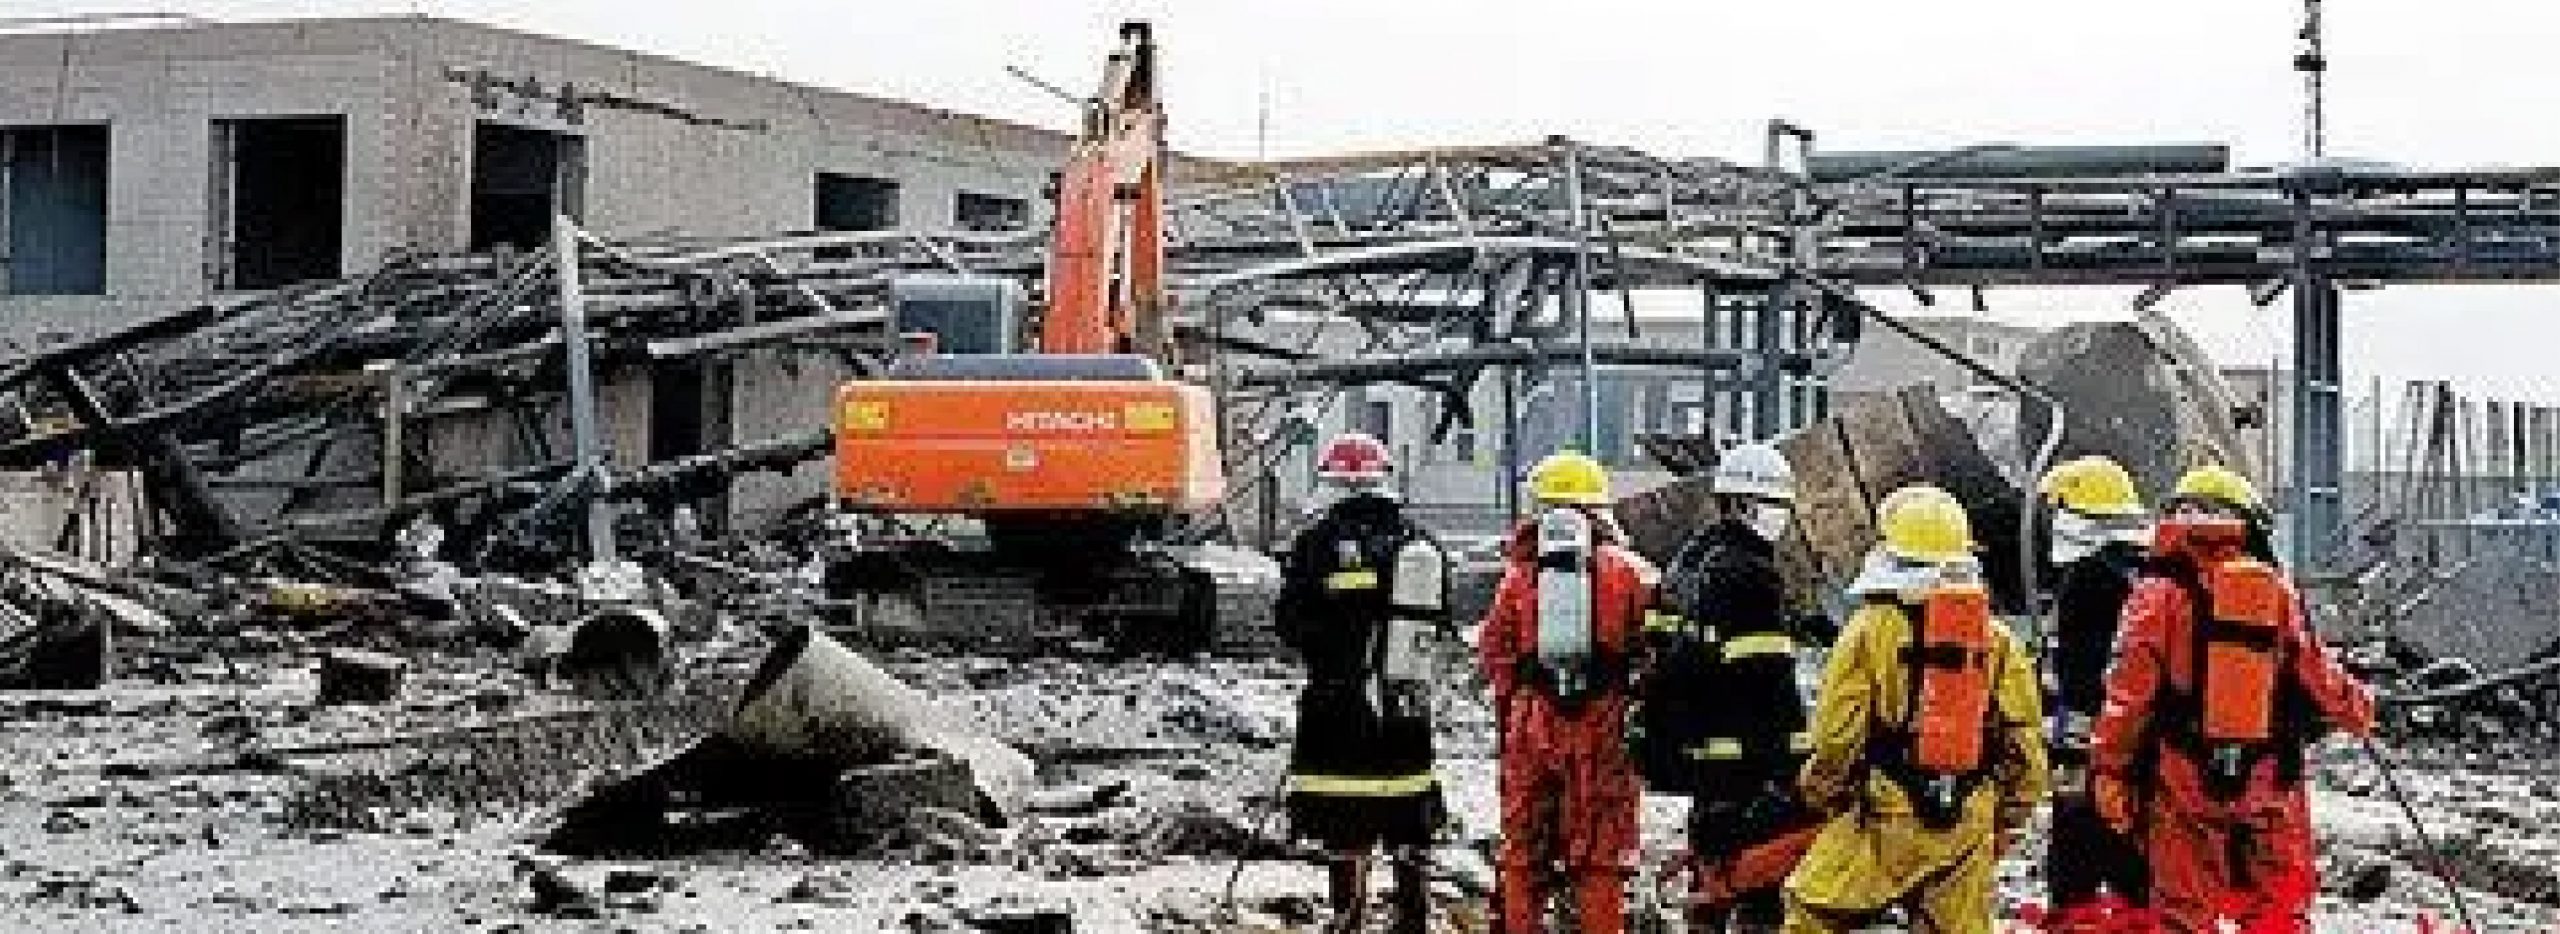 长峰医院火灾事故背后 - 中国新闻周刊网